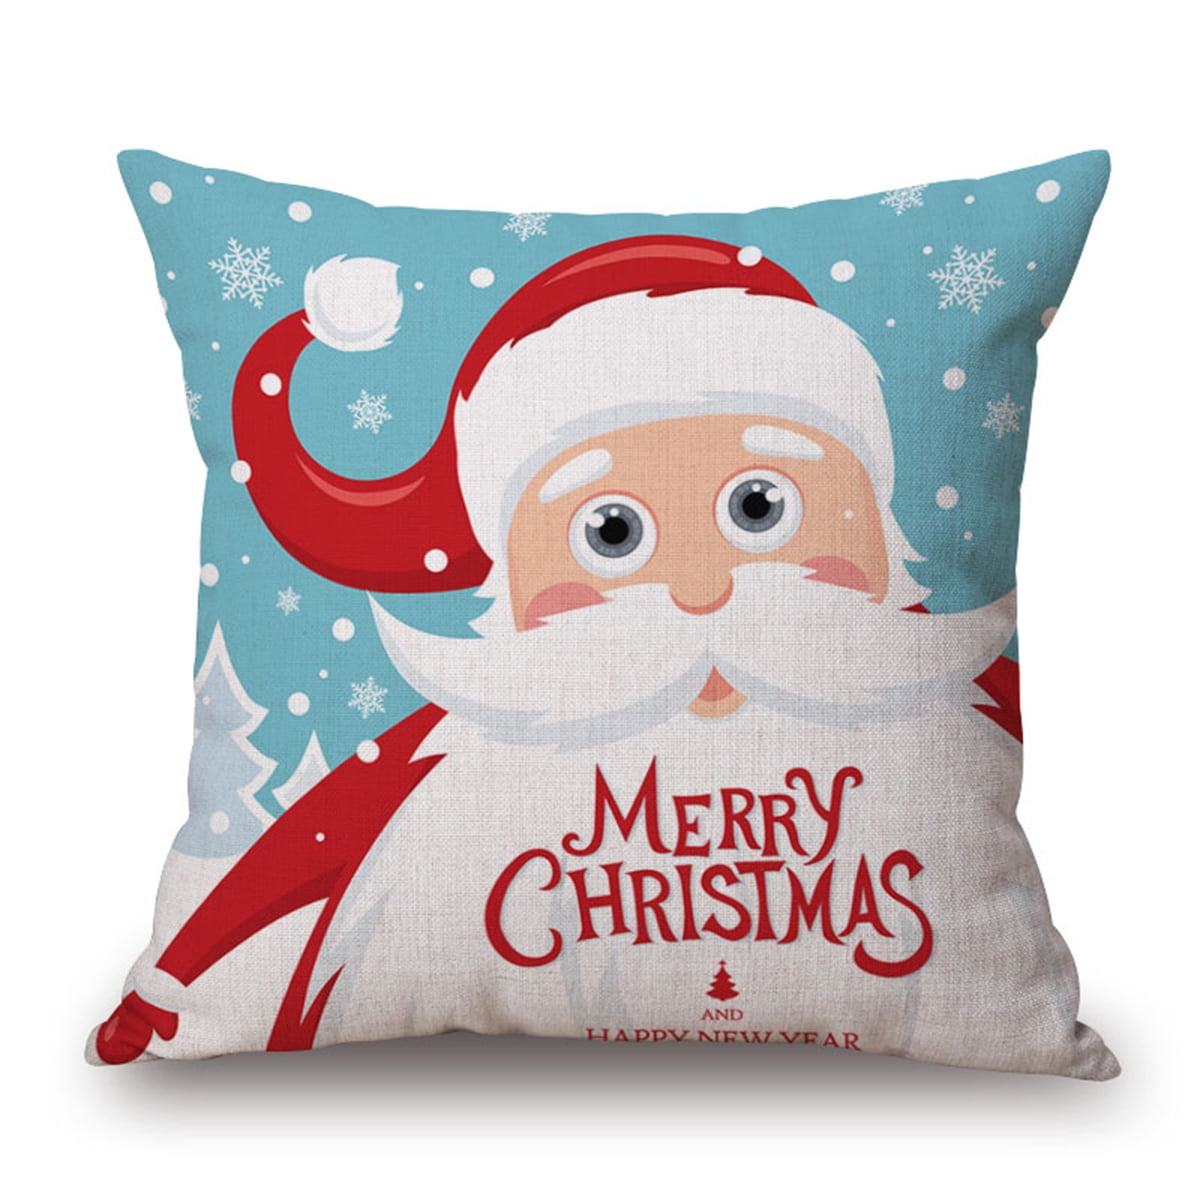 Christmas  Pillow Case Xmas Linen Cushion Cover Throw Home Decor Festive Gift 